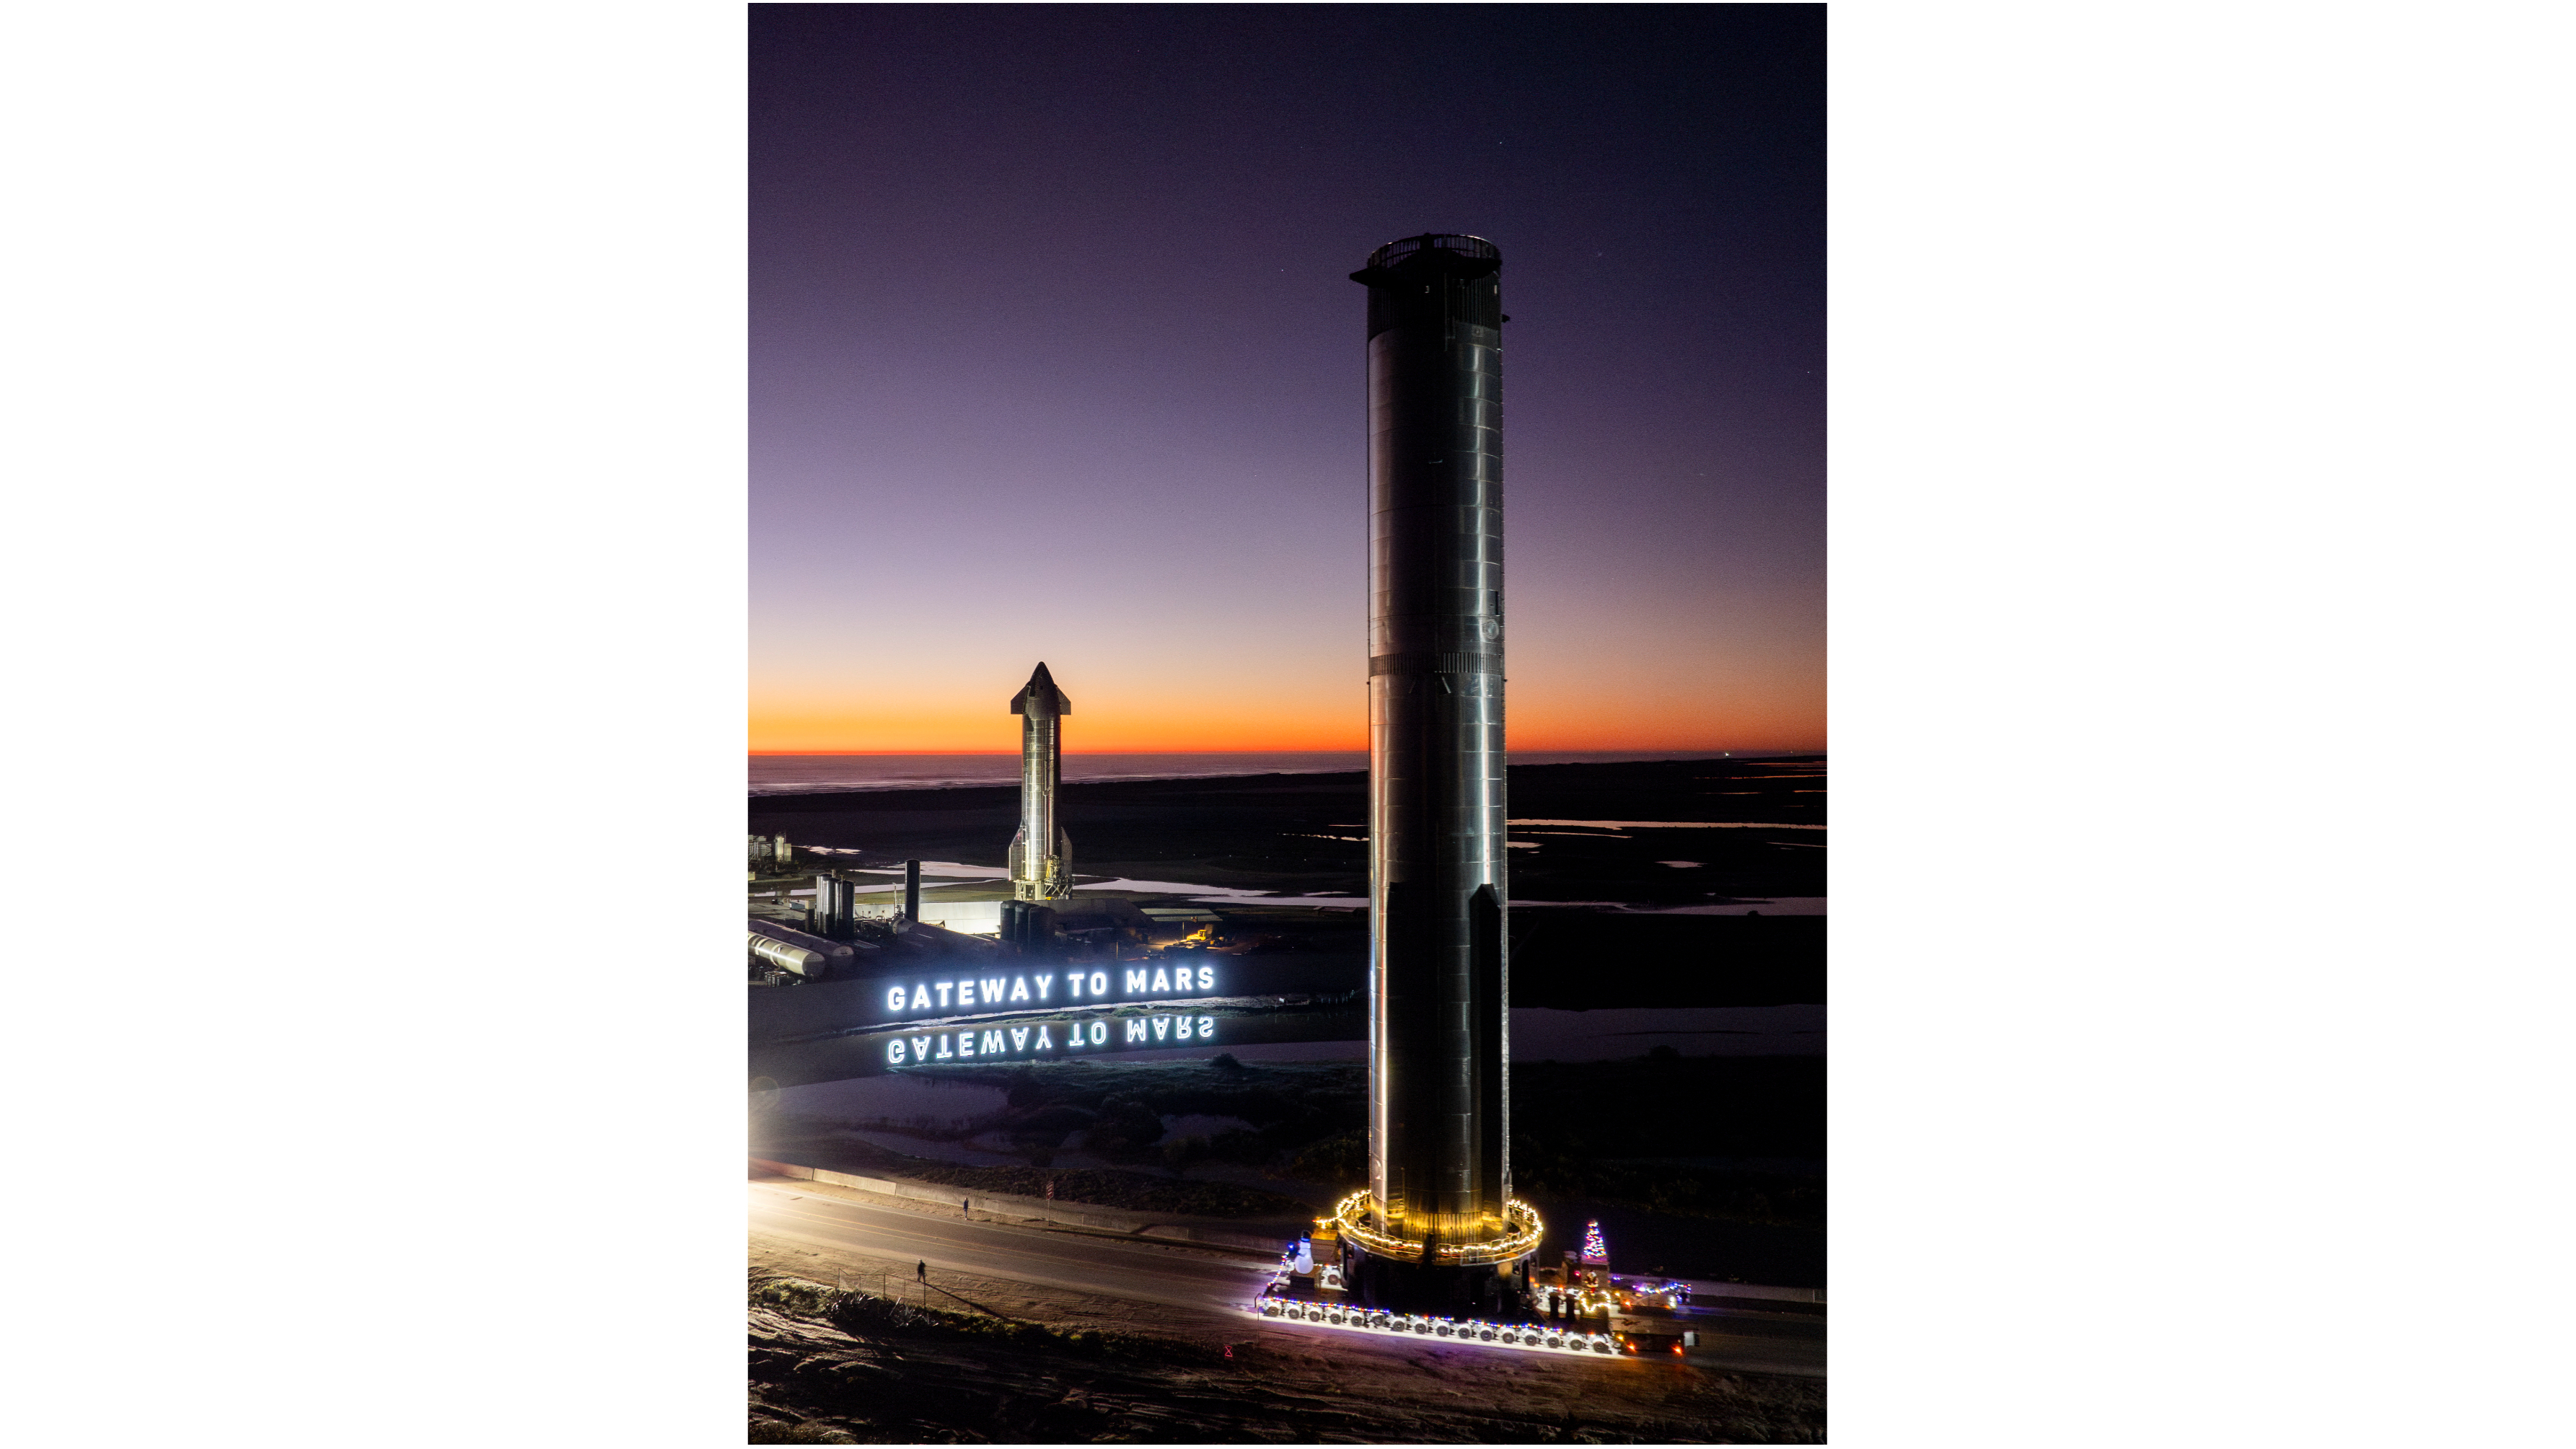 El propulsor del cohete y la etapa superior están colocados verticalmente contra un cielo oscuro, cerca de un letrero iluminado blanco que dice 